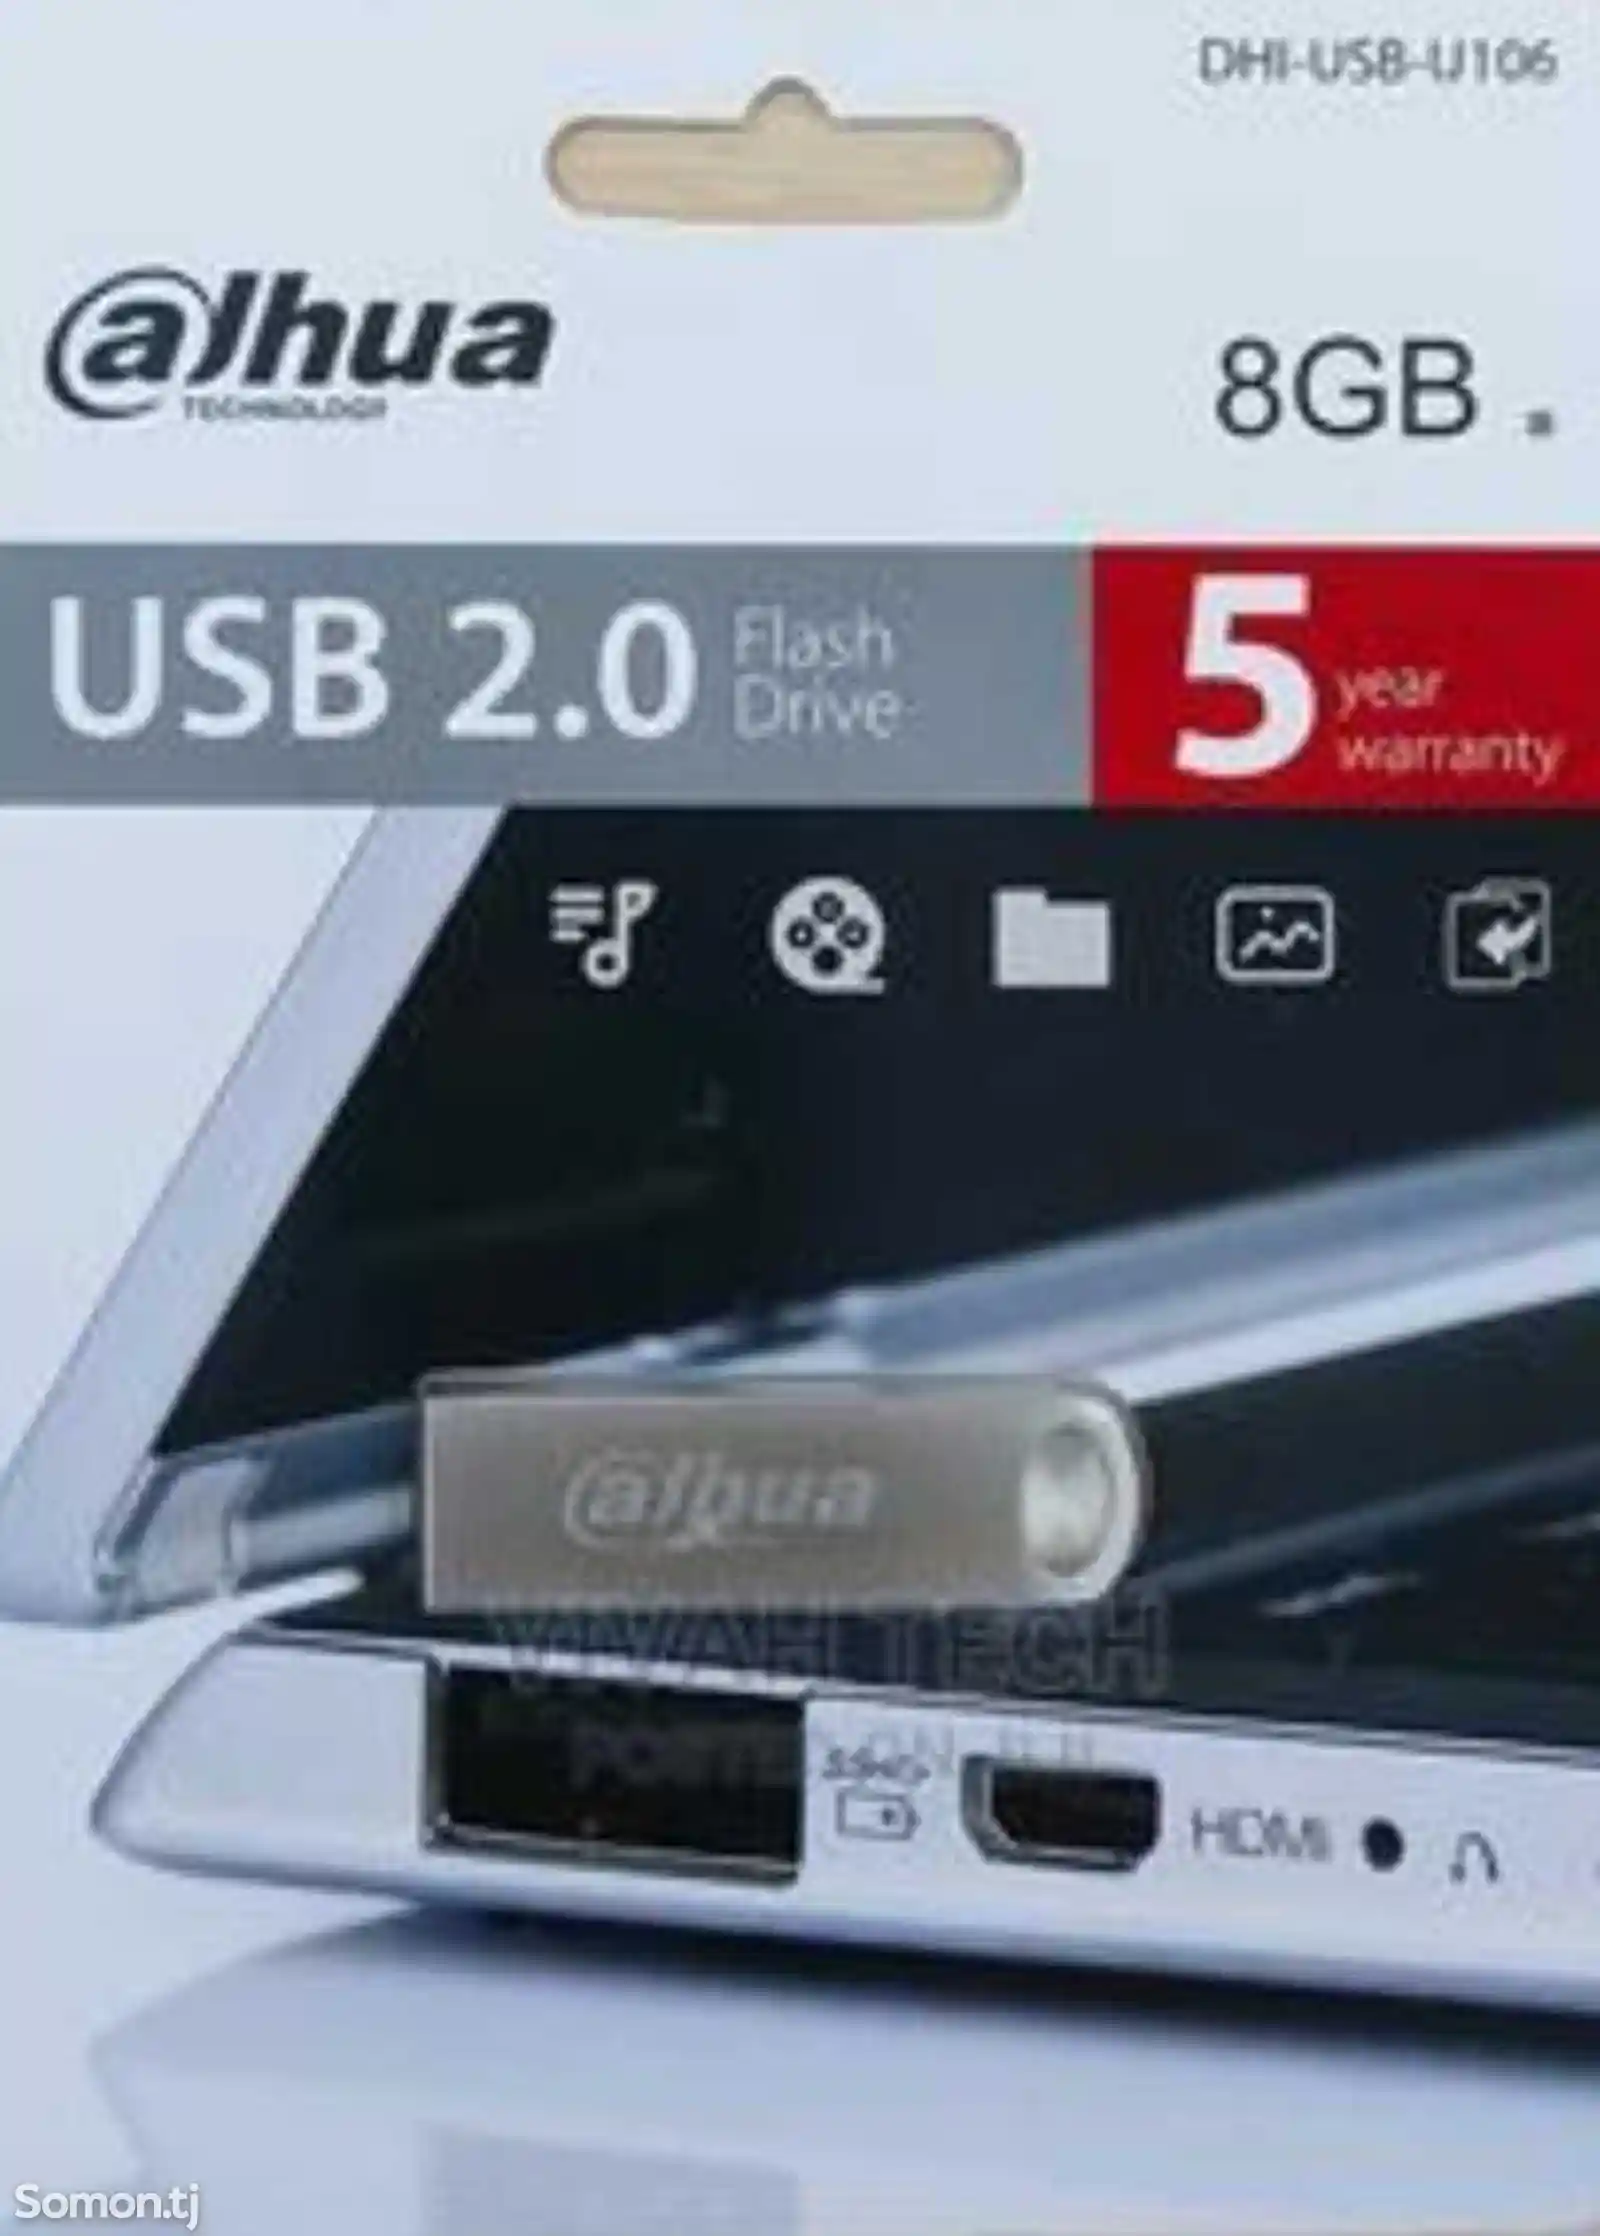 Dahua Usb Flash Drive 32GB-4